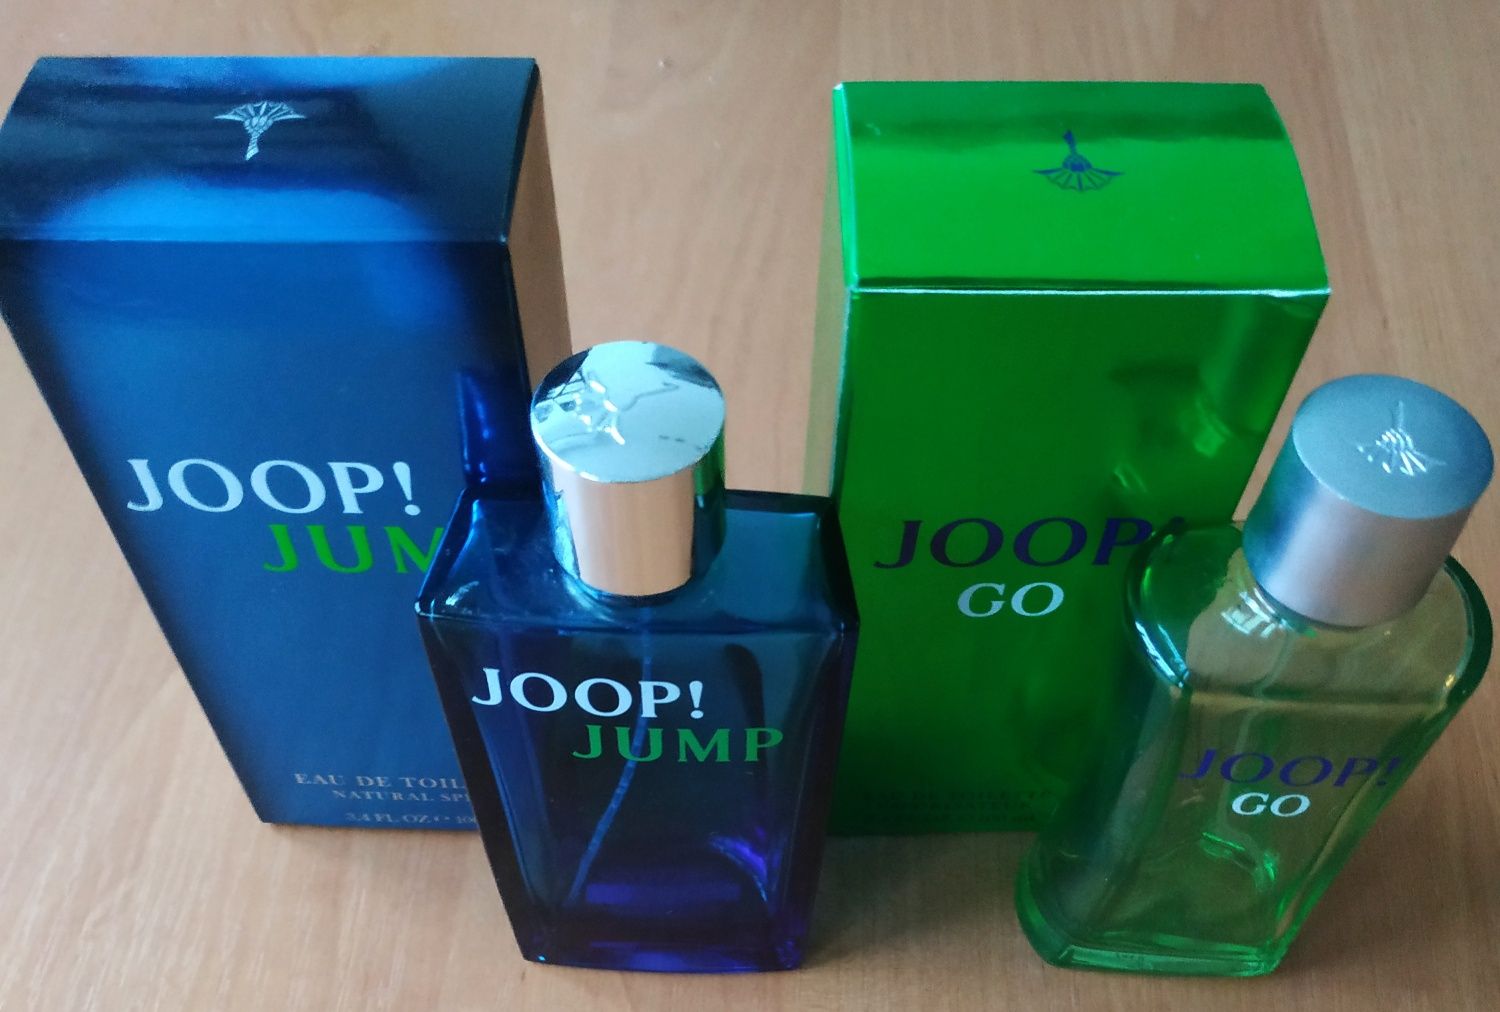 Joop Go, Jump 100 ml.